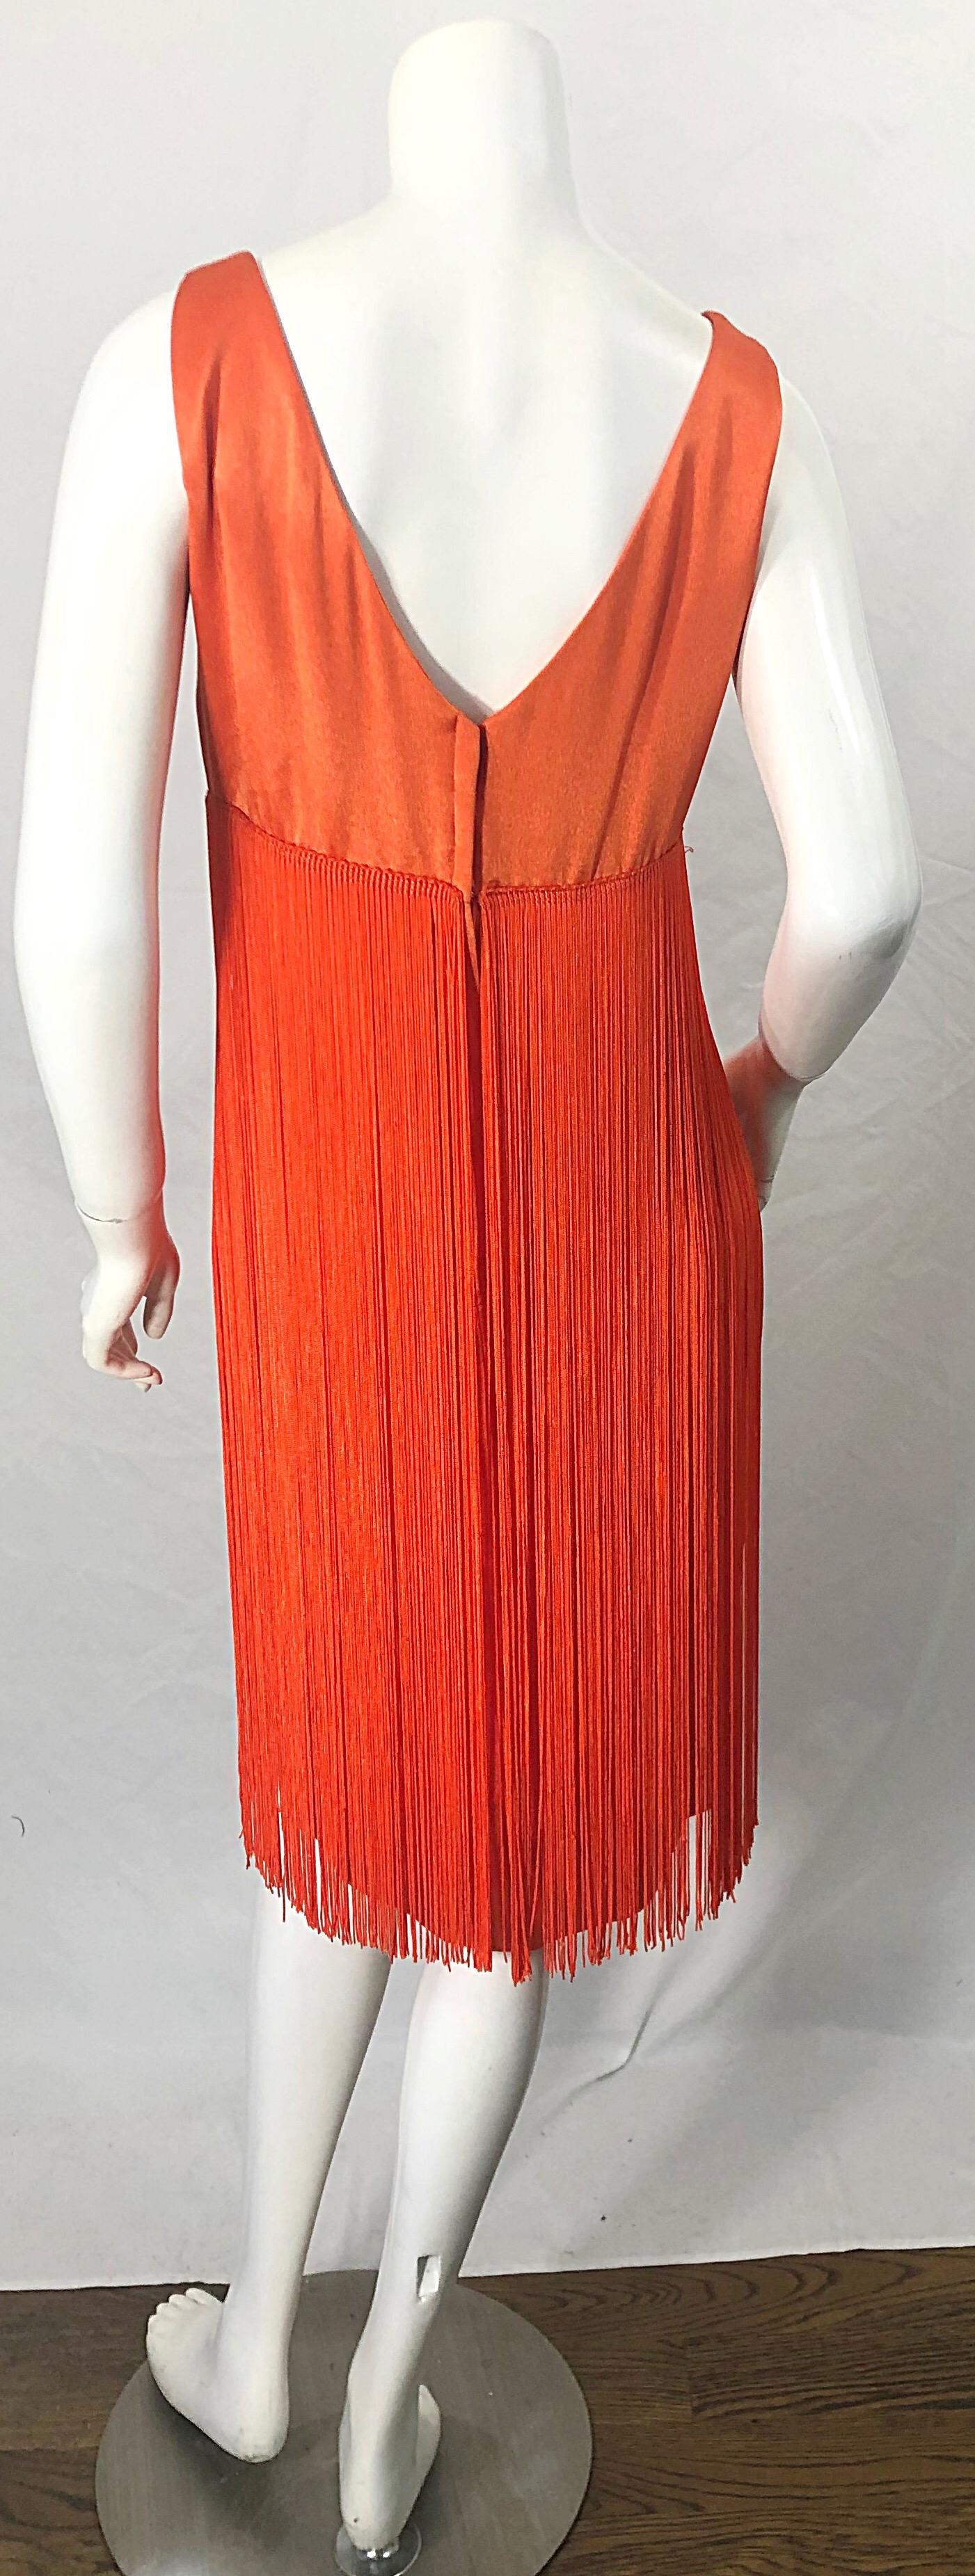 Rouge Joseph Magnin - Robe de soirée vintage orange fluo entièrement à franges, années 1960 en vente